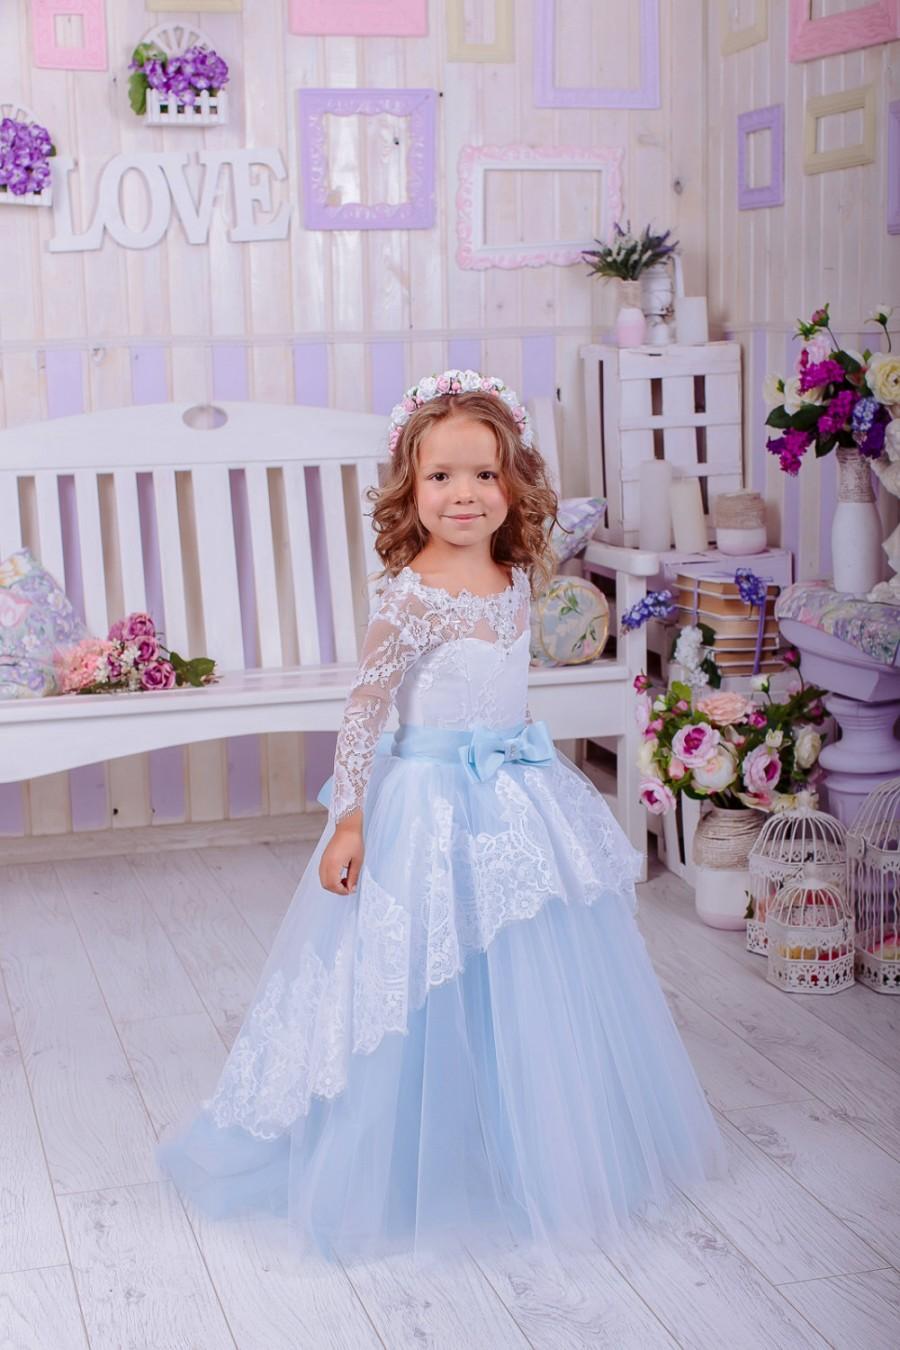 زفاف - Baby Blue Lace Flower Girl Dress,Flower Girl Dress,Wedding Party Dress,Baby Dress, Rustic Girl Dress, Girls Dresses,Ivory Flower Girl Dress